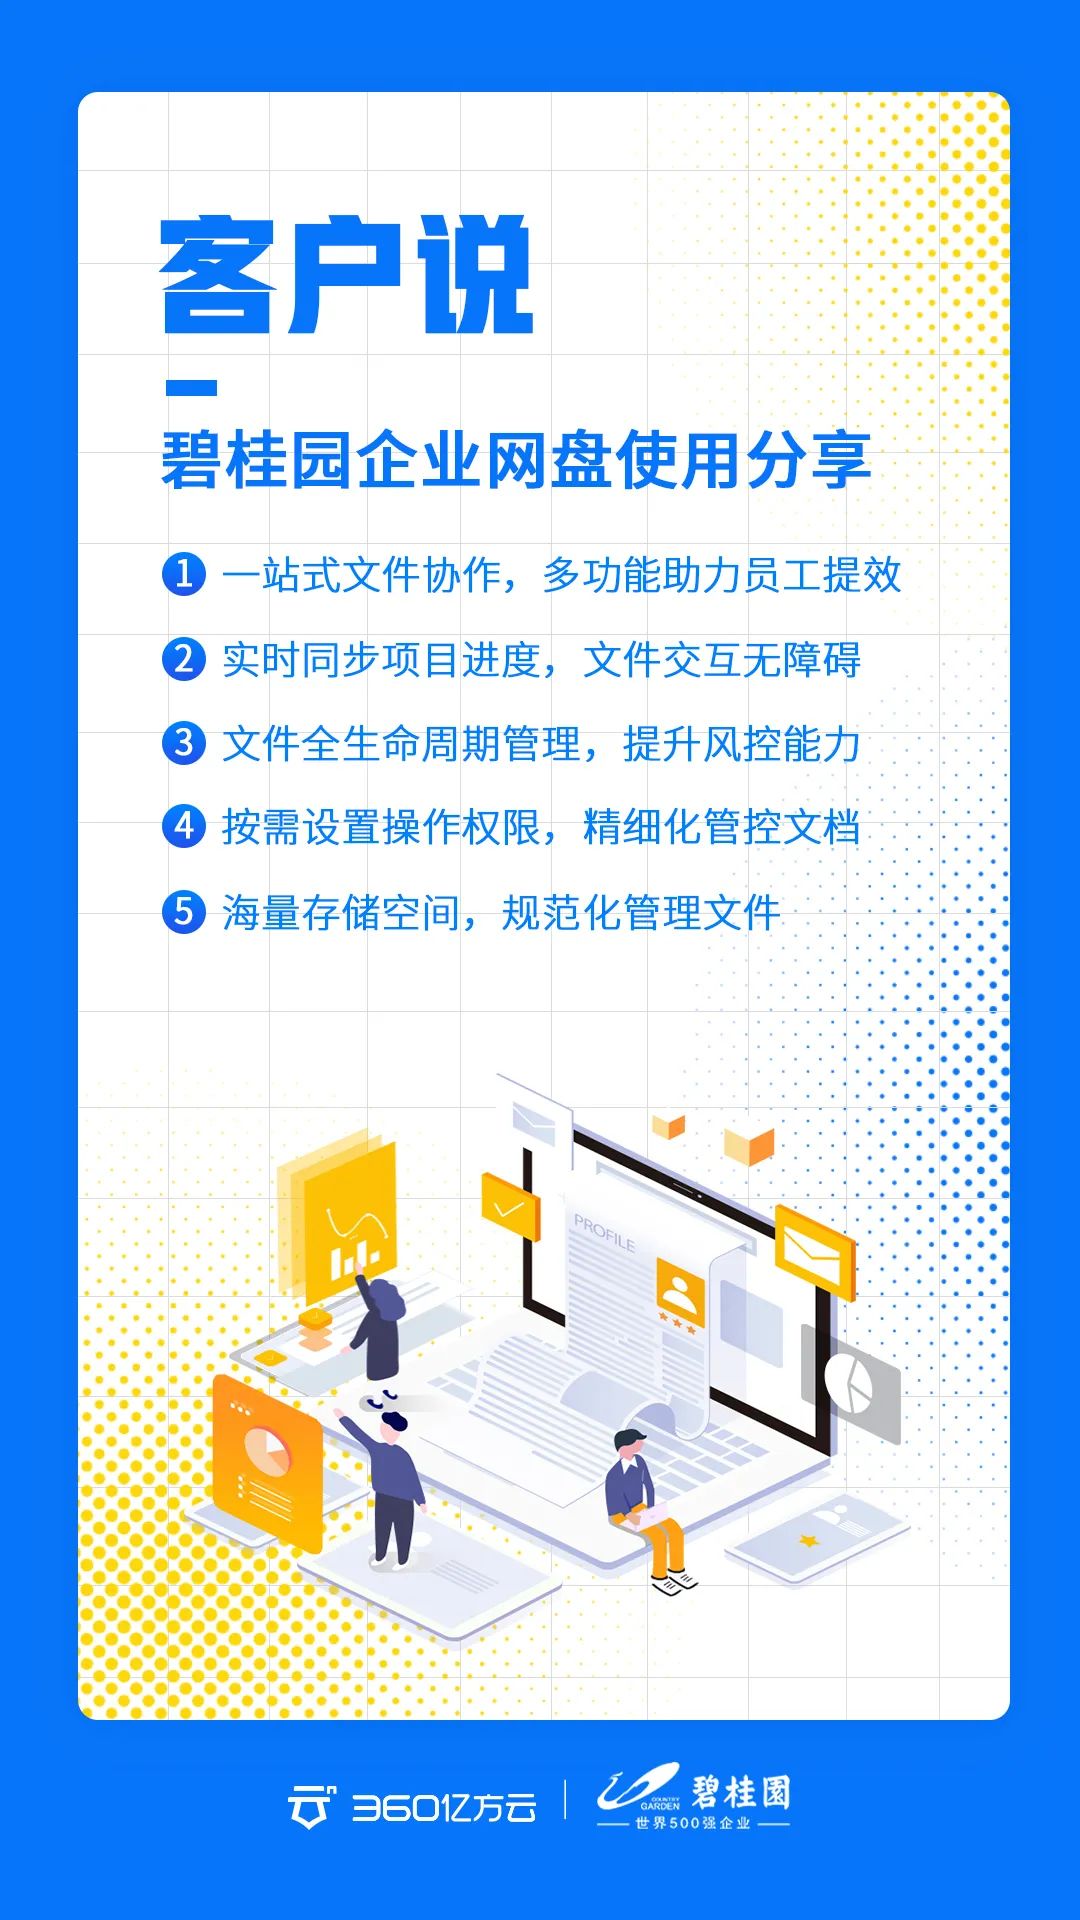 两月销售额近千亿，稳居行业第一，碧桂园如何实现企业文档高效安全协同？